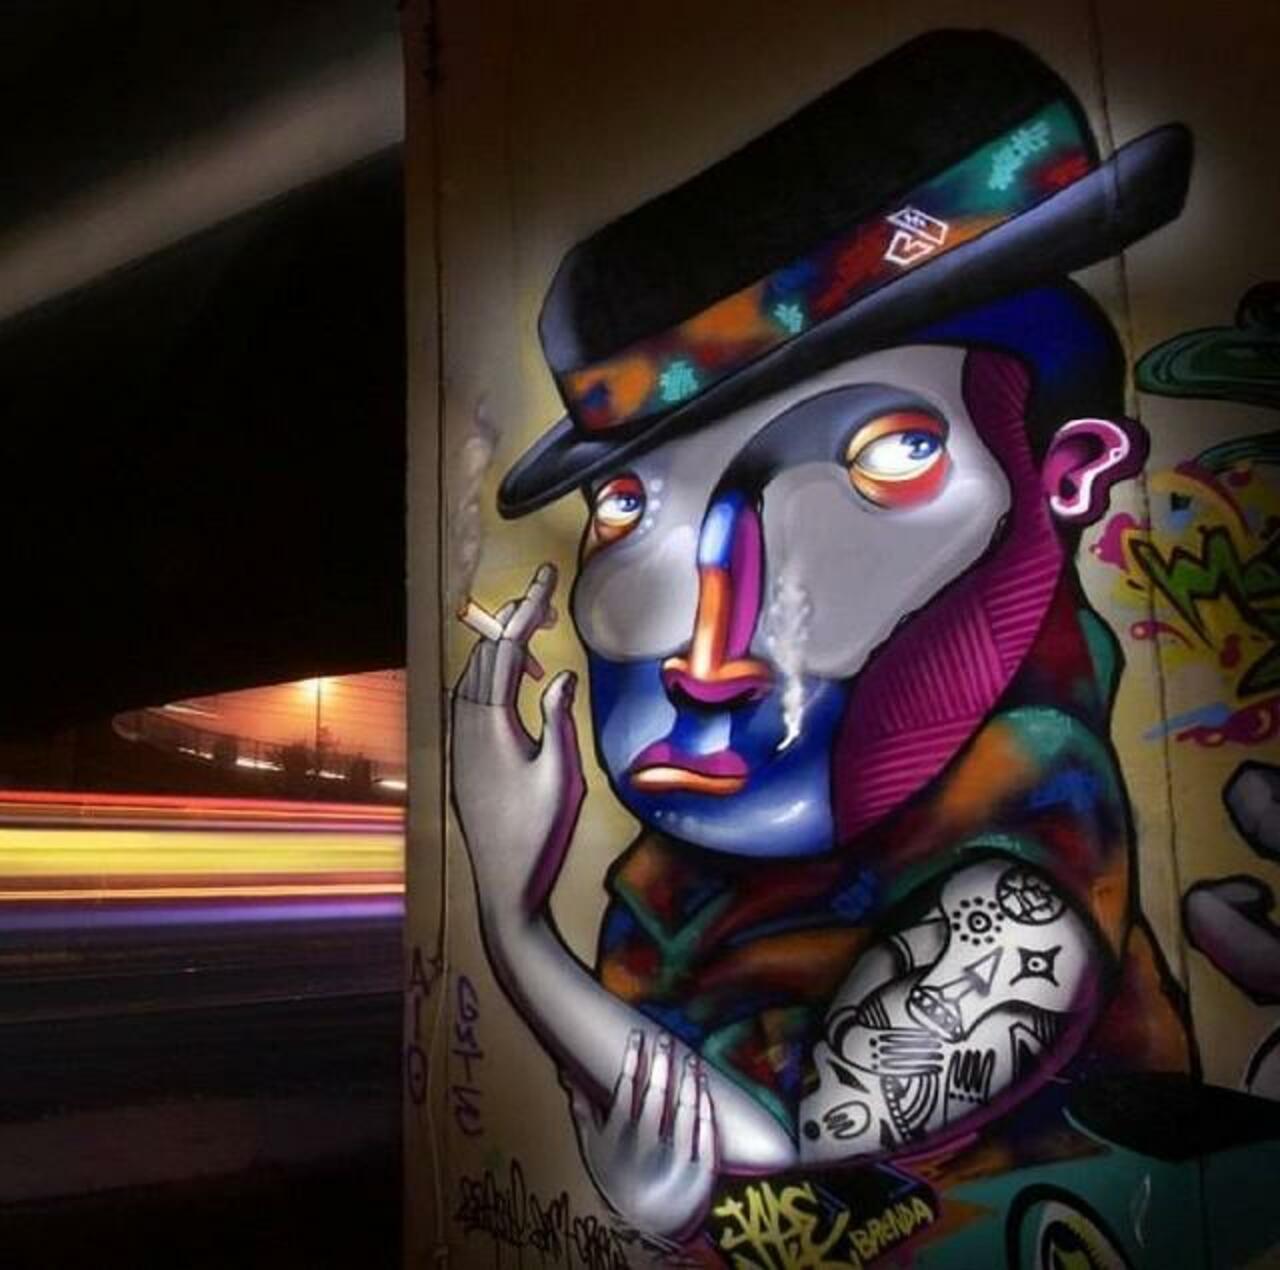 Abstract Street Art by Jade Rivera 

#art #mural #graffiti #streetart http://t.co/DZtH8SFdKg